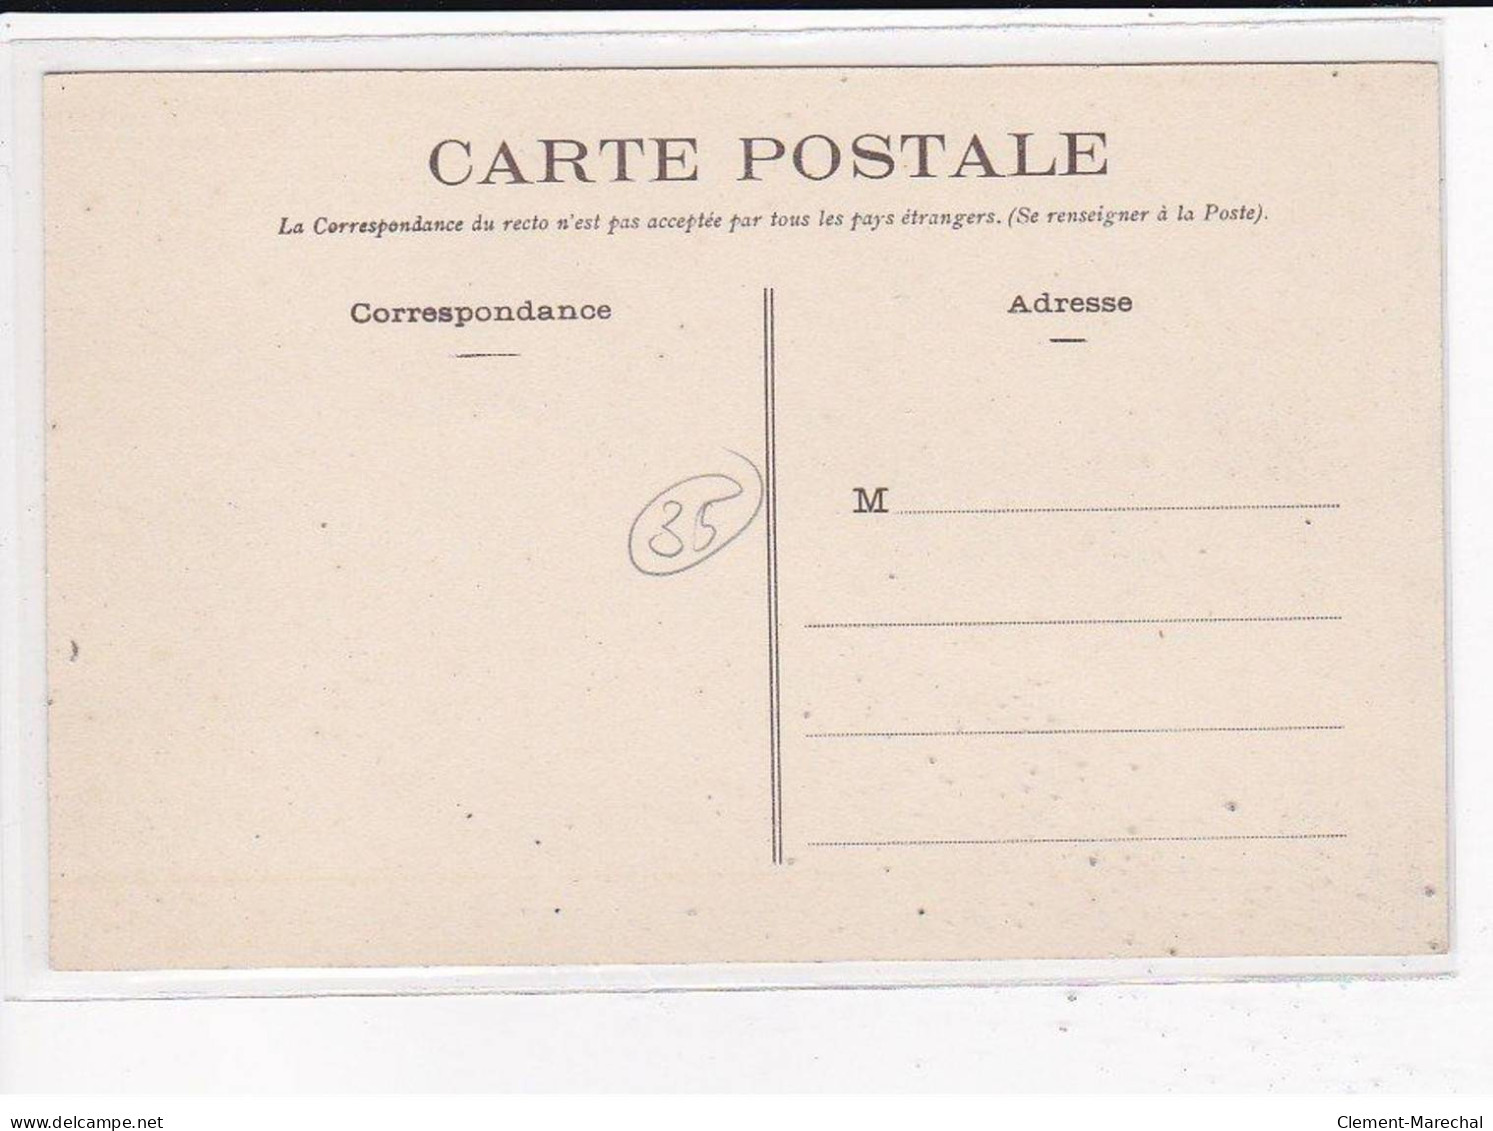 RENNES : Obsèques de Son éminence, le cardinal Labouré, 26 Avril 1906, Lot de 10 cartes postales - très bon état